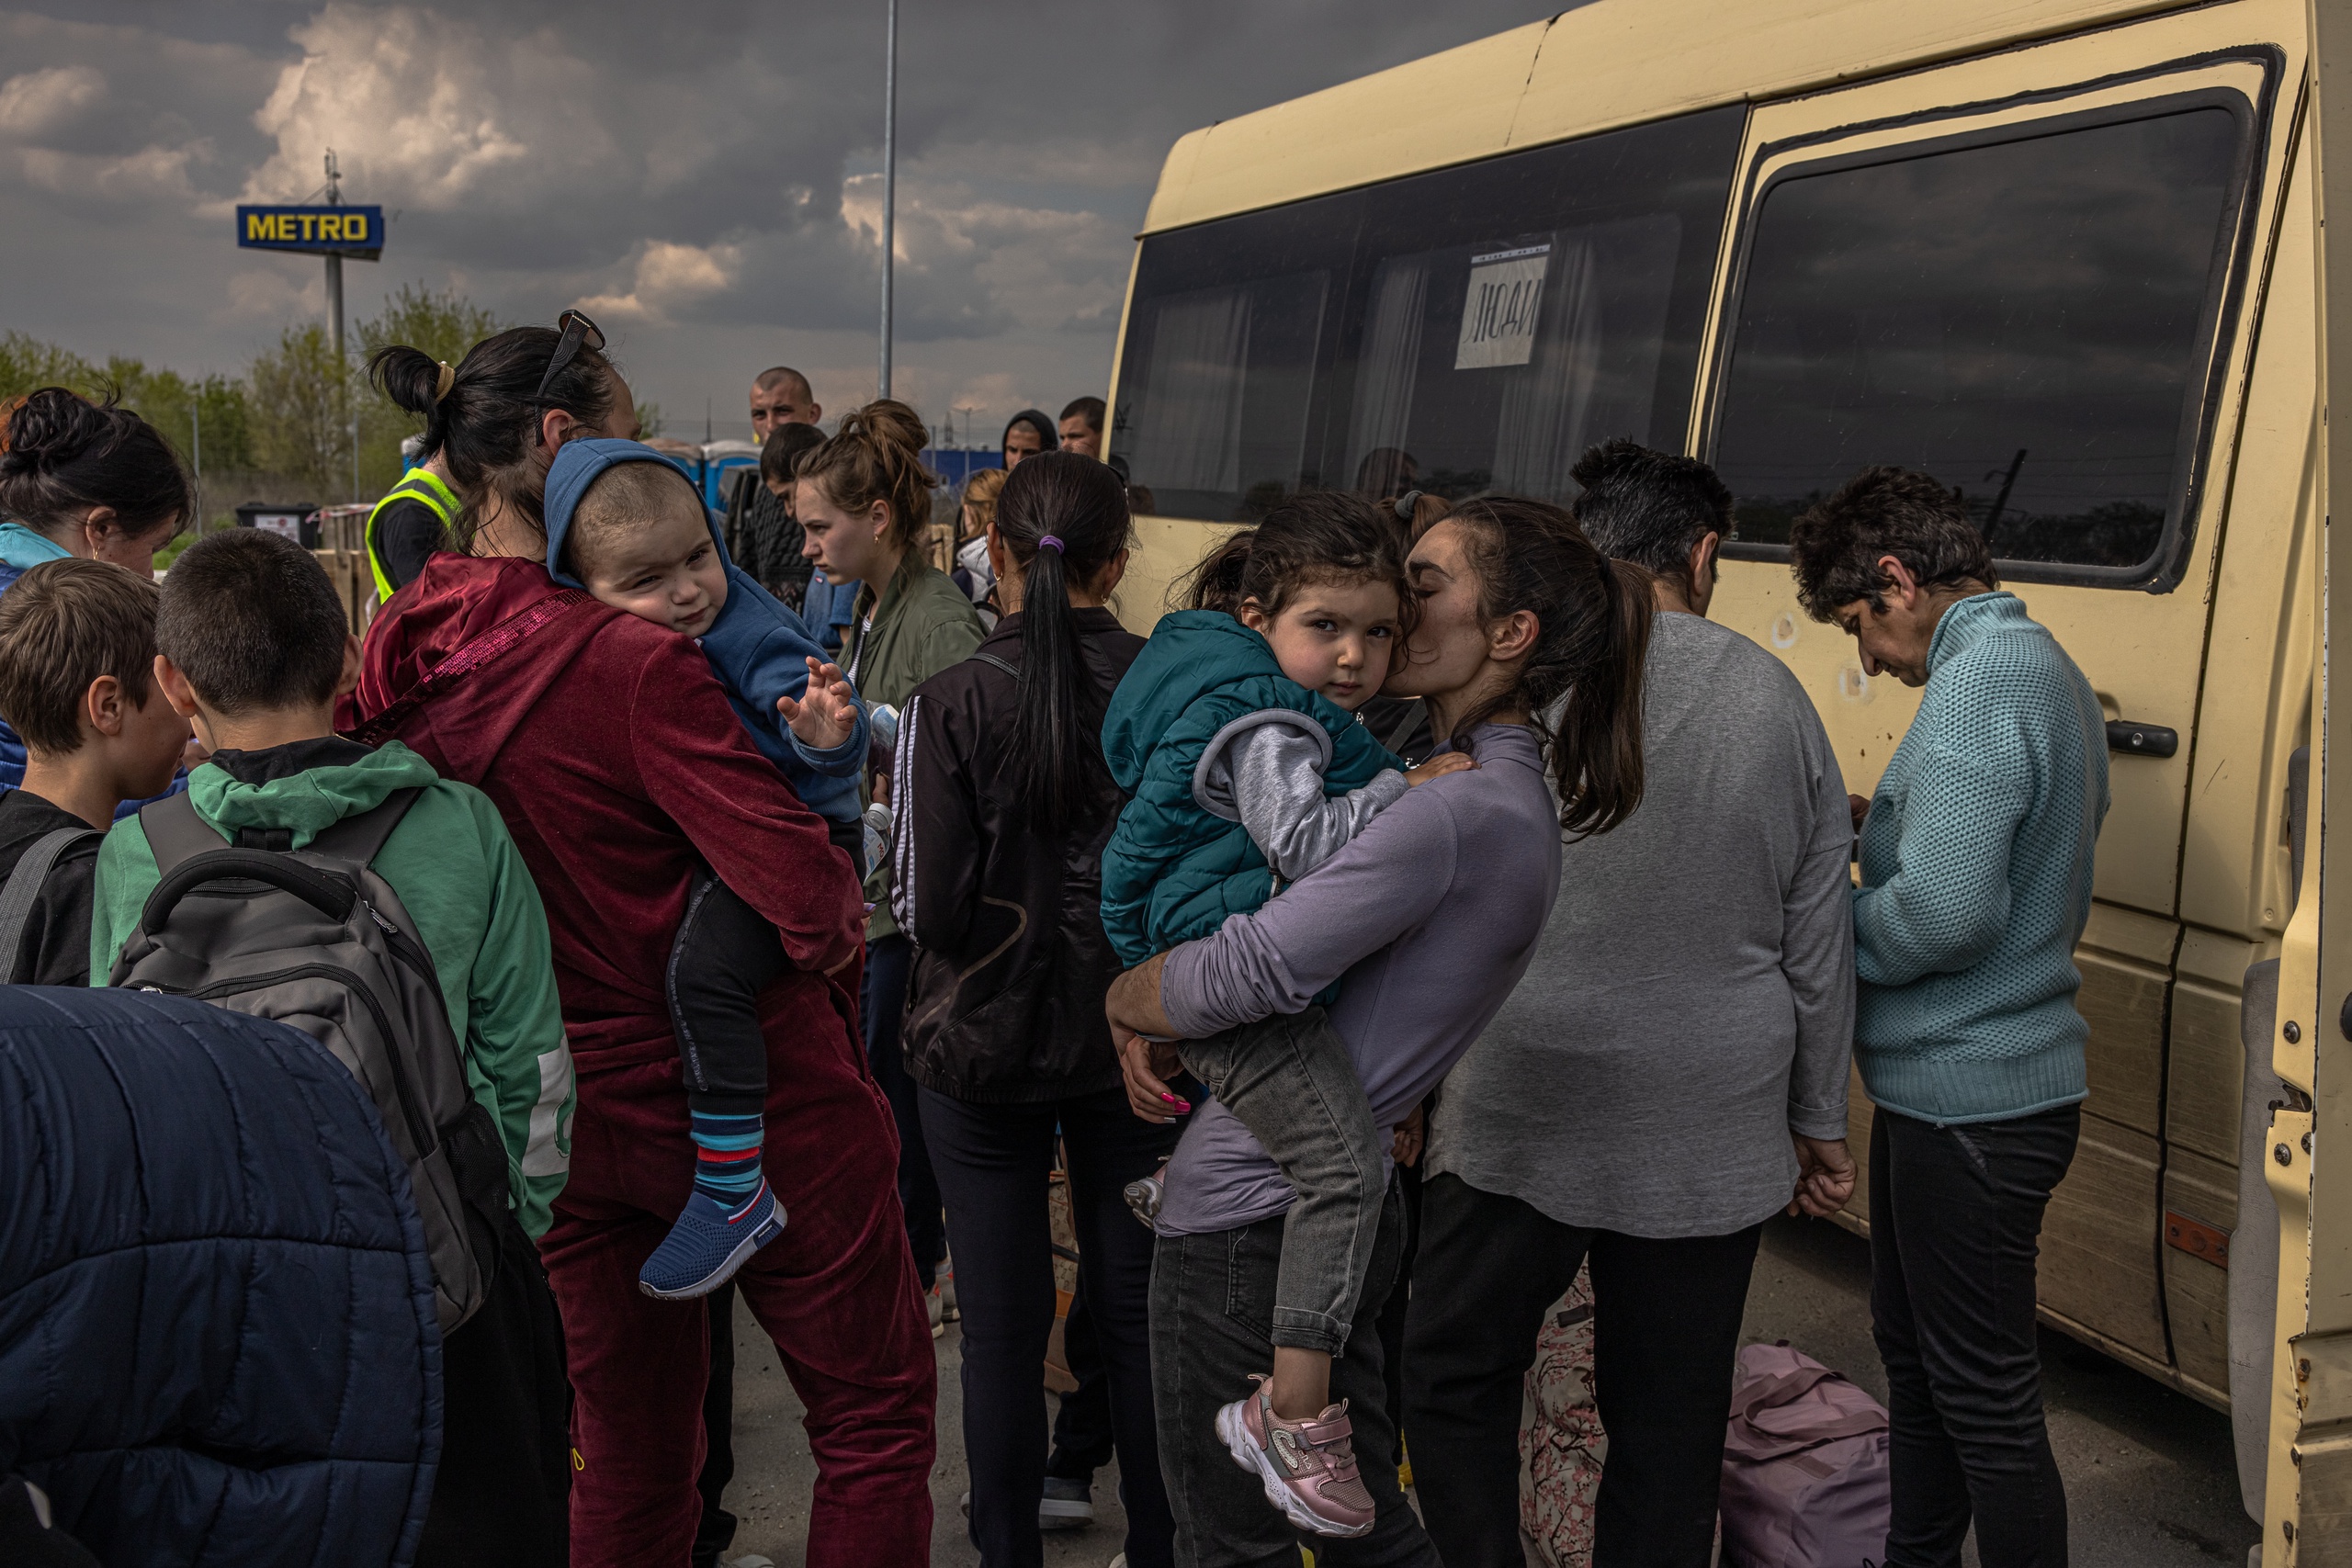 Europa moet in de winter een grotere vluchtelingenstroom verwachten vanuit Oekraïne. Dat zegt de Oostenrijkse migratie-expert Gerald Knaus tegenover BNR.